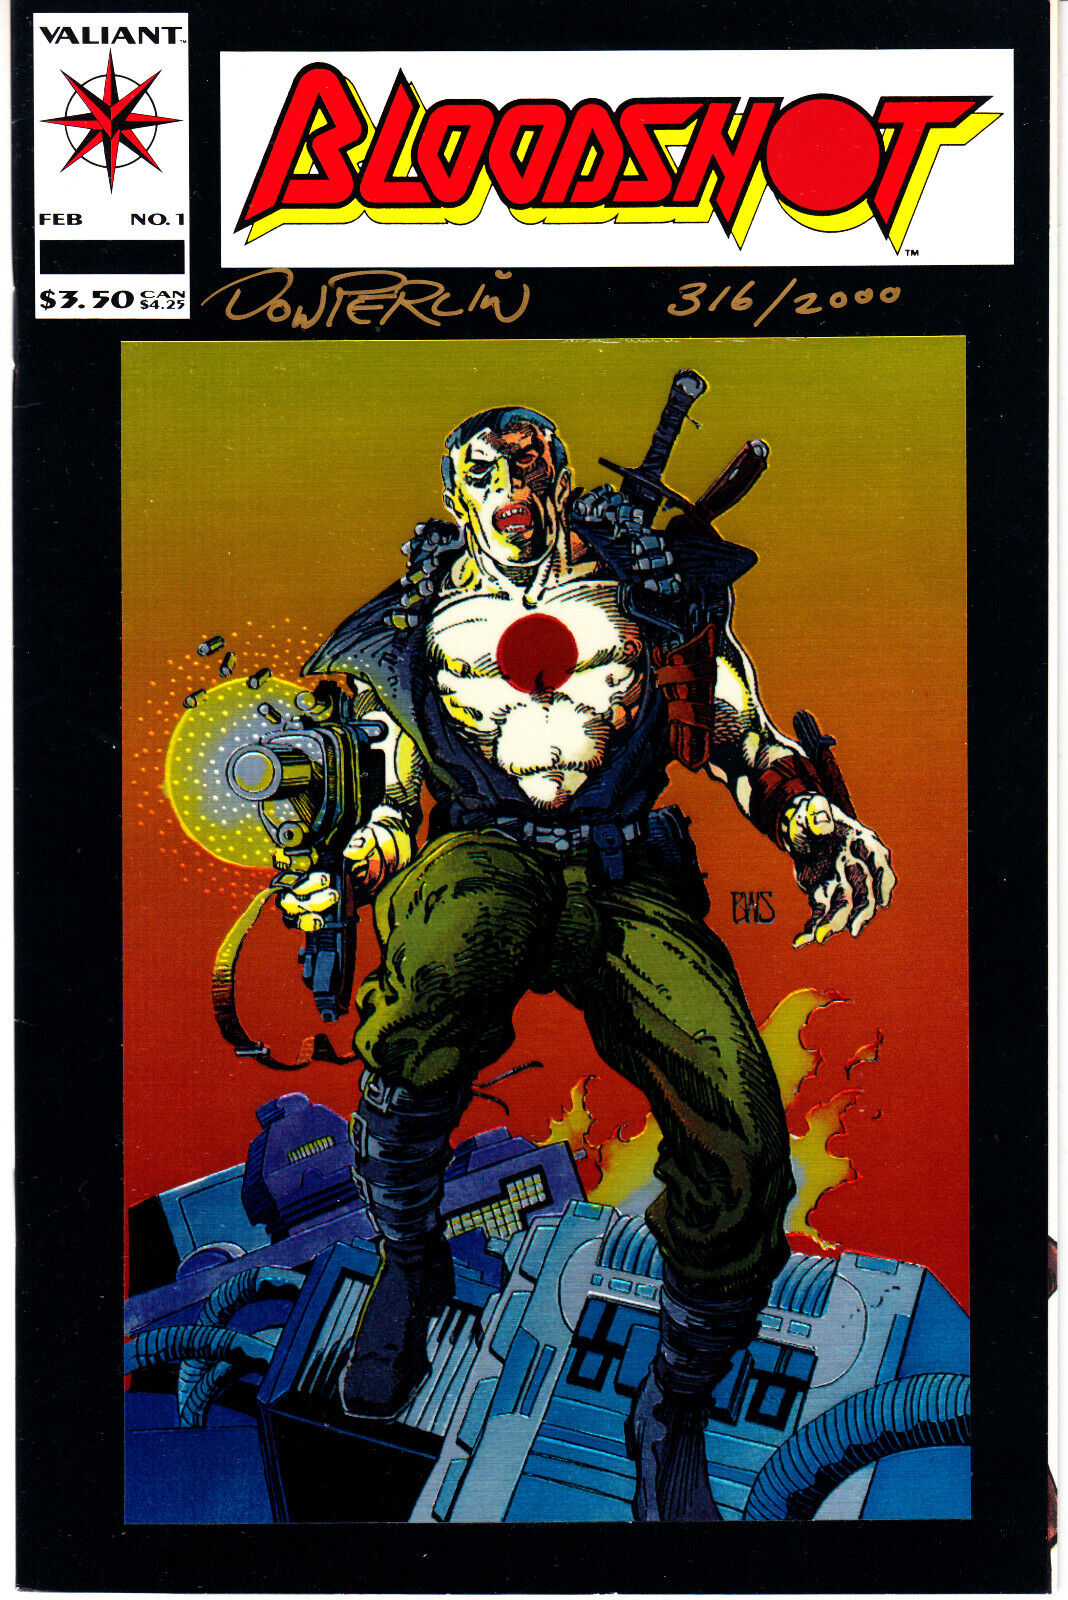 Bloodshot #1 Chromium Cover (Valiant, 1993) - Signed - COA - Vintage - #316/2000